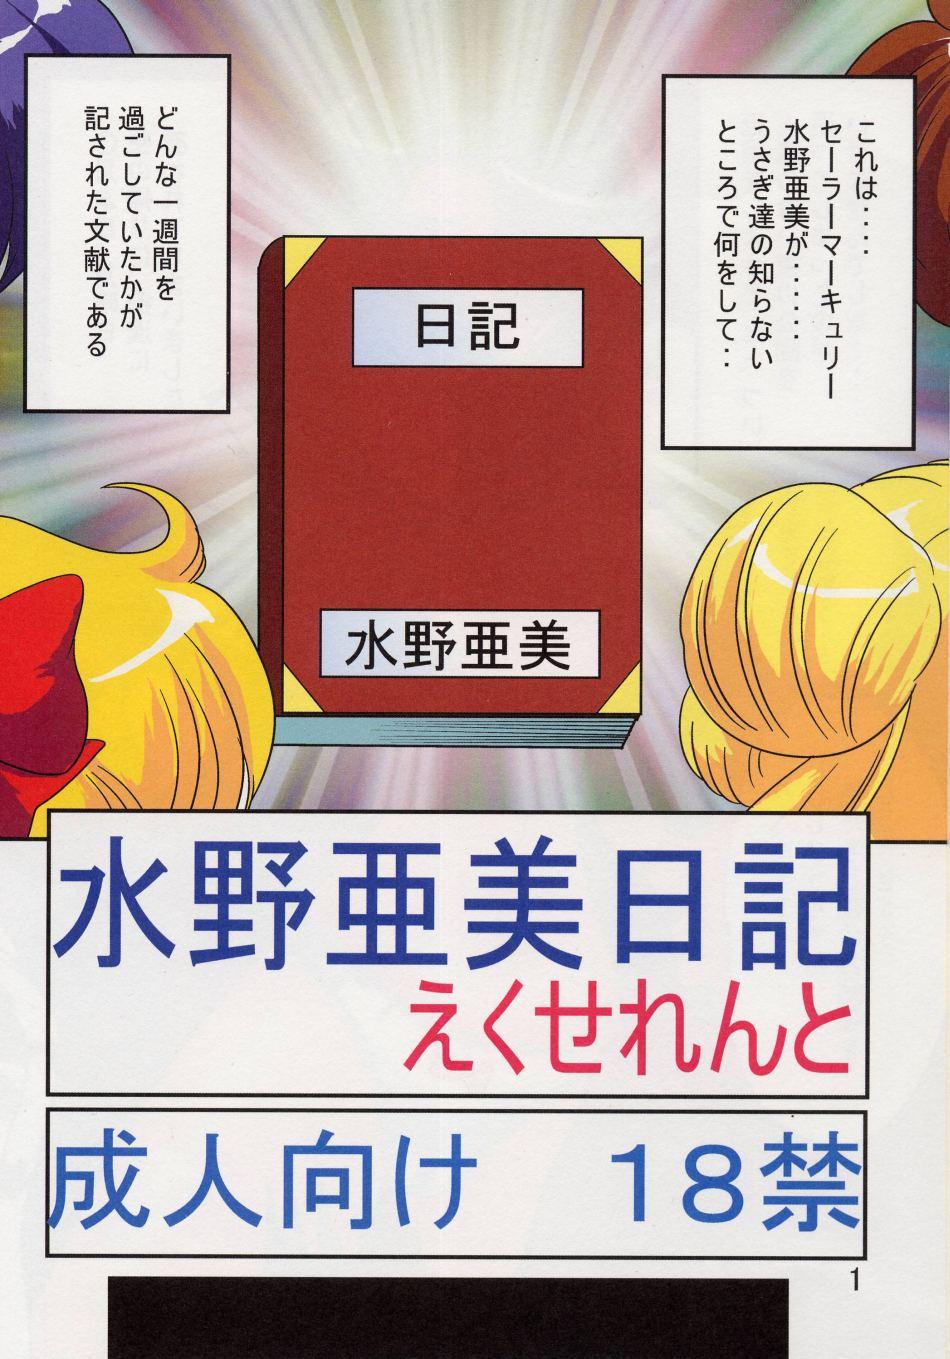 Amigos Mizuno Ami Nikki Excellent - Sailor moon Casada - Page 2